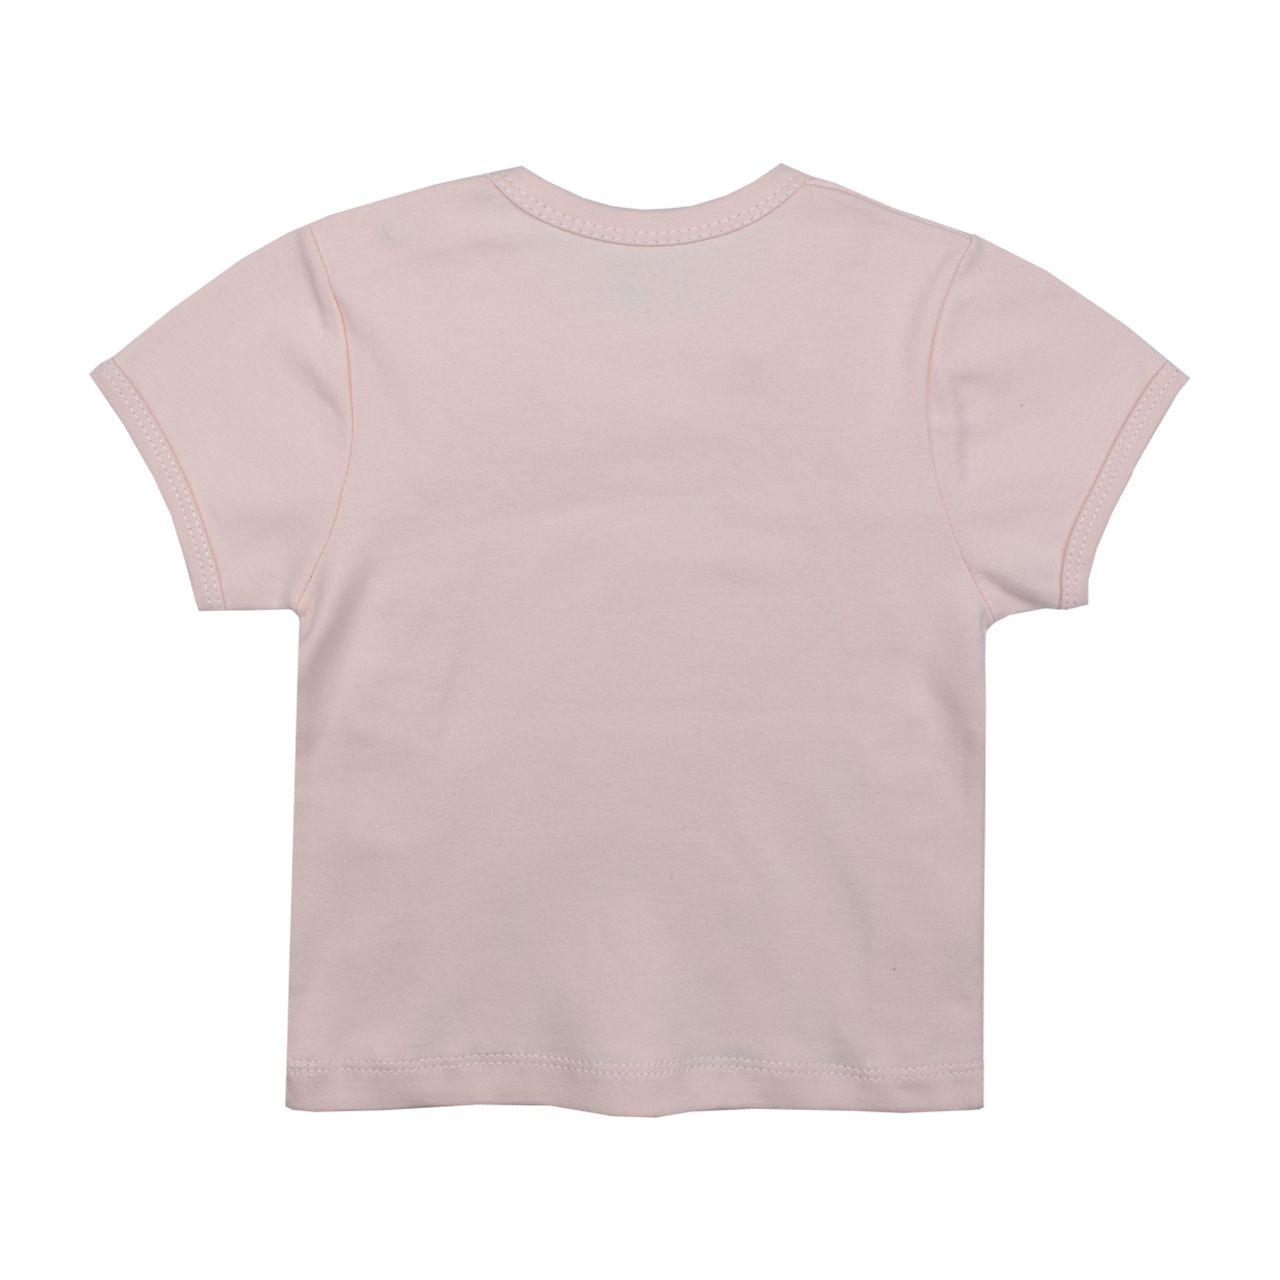 ست تی شرت آستین کوتاه و شلوار نوزادی اسپیکو مدل پارادایس کد 1 -  - 3